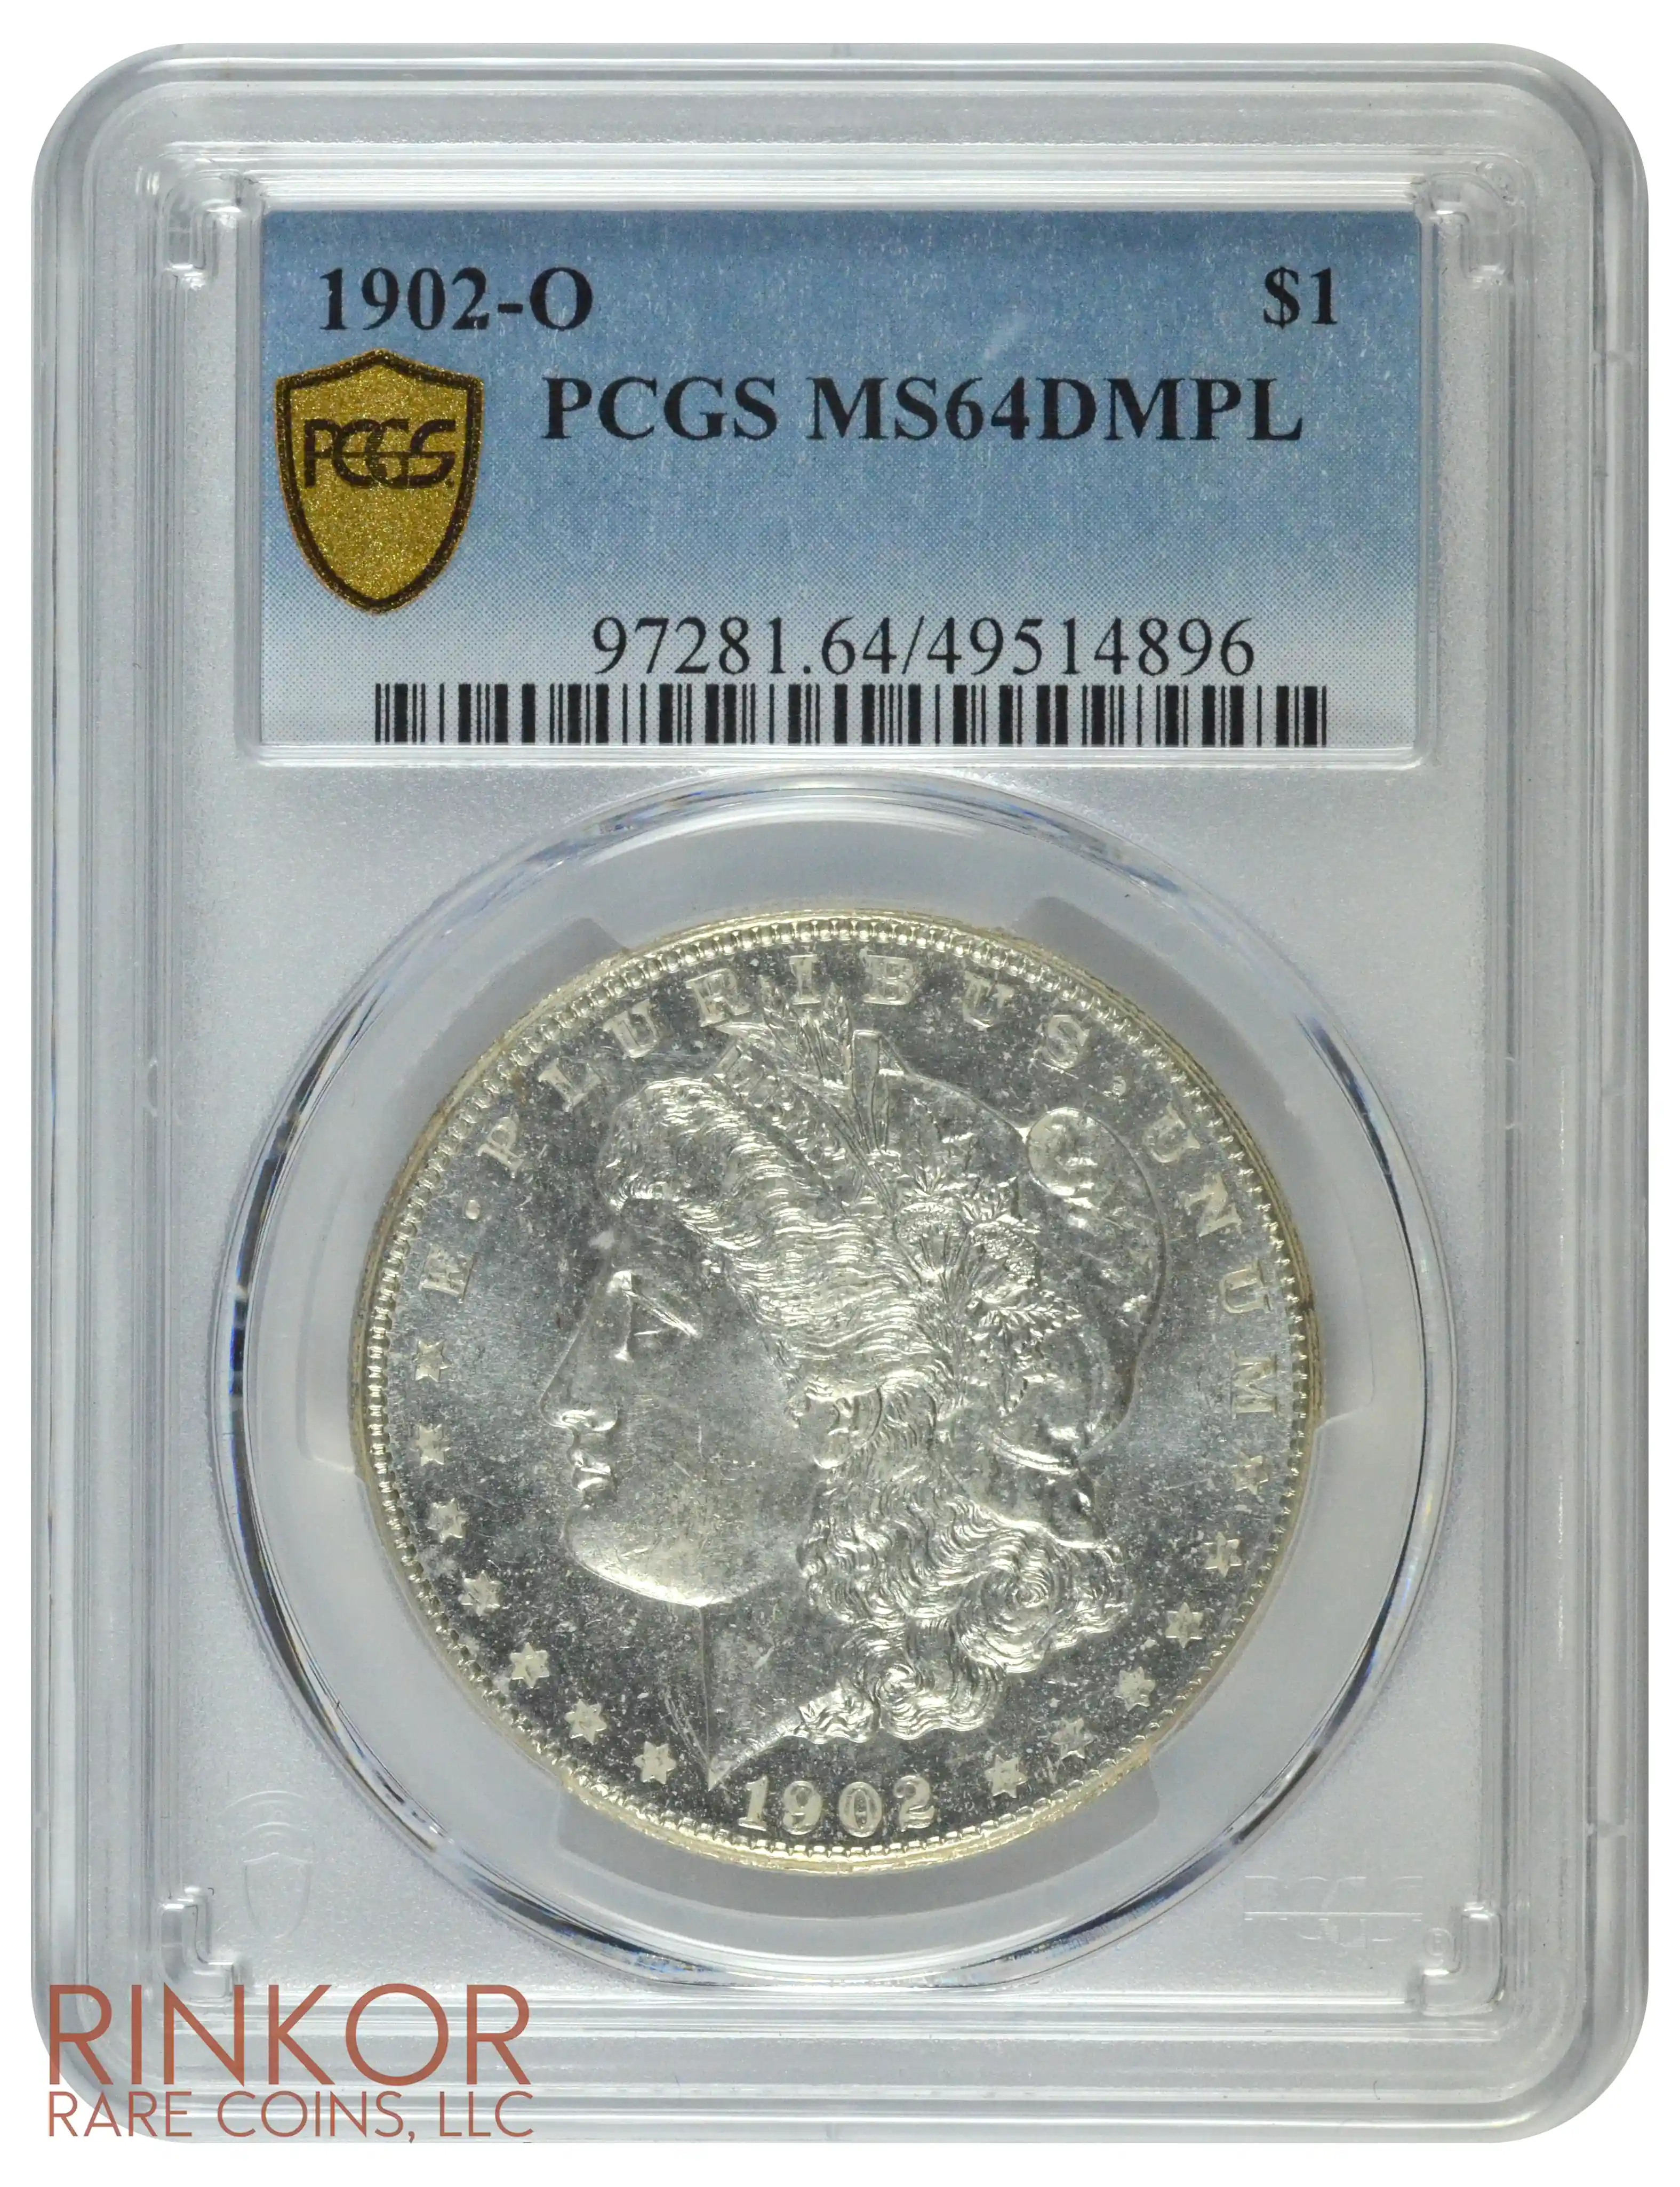 1902-O $1 PCGS MS 64 DMPL